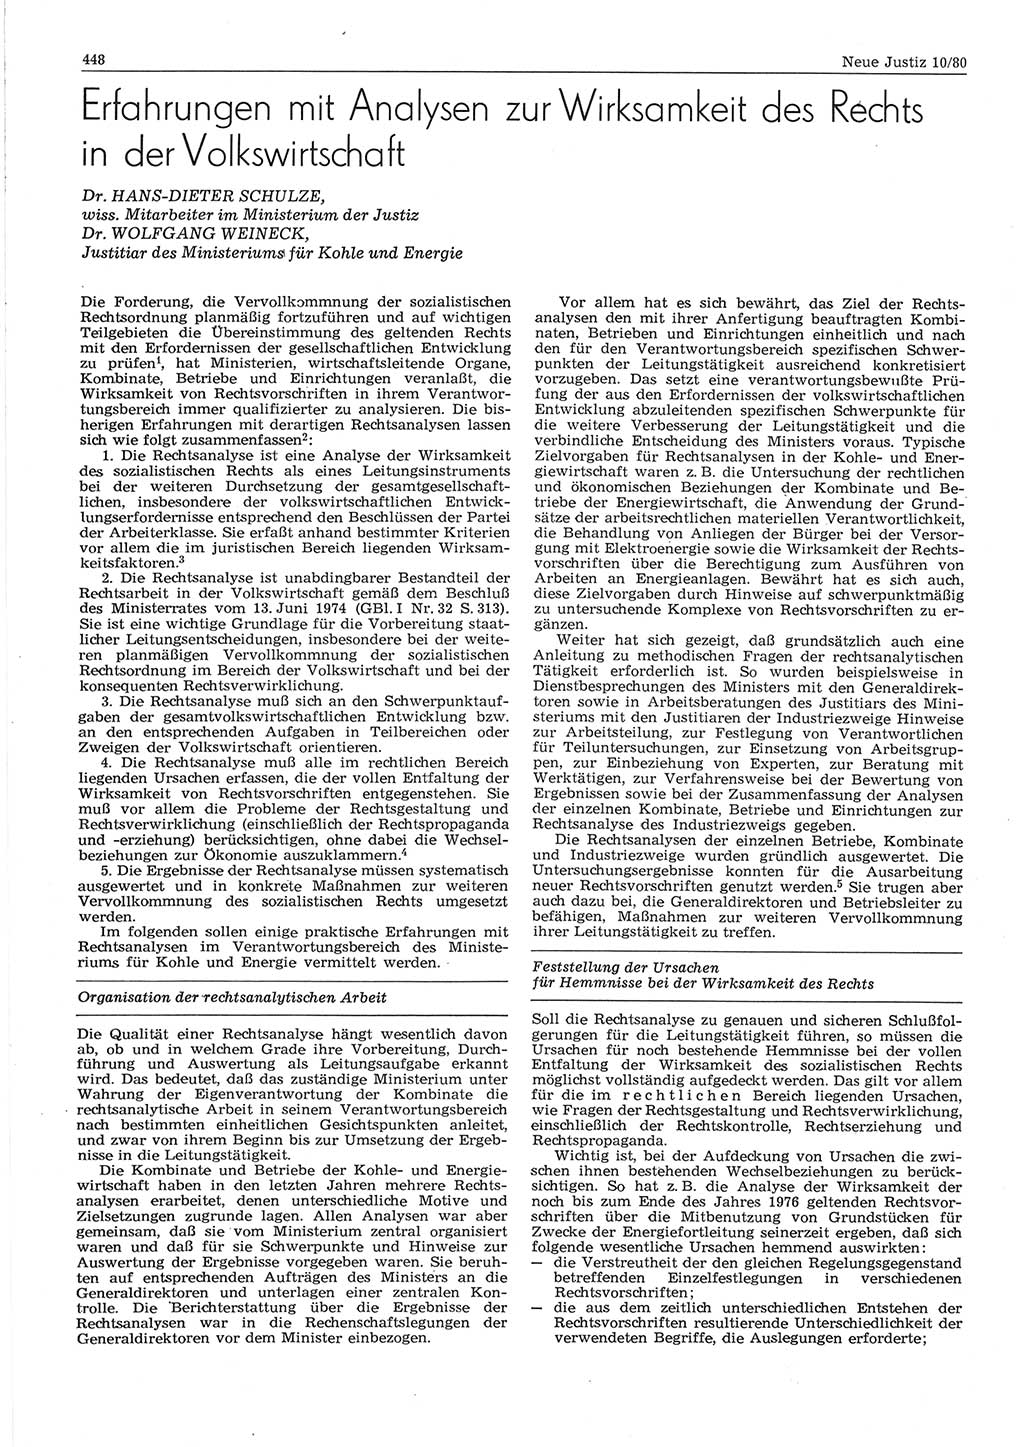 Neue Justiz (NJ), Zeitschrift für sozialistisches Recht und Gesetzlichkeit [Deutsche Demokratische Republik (DDR)], 34. Jahrgang 1980, Seite 448 (NJ DDR 1980, S. 448)